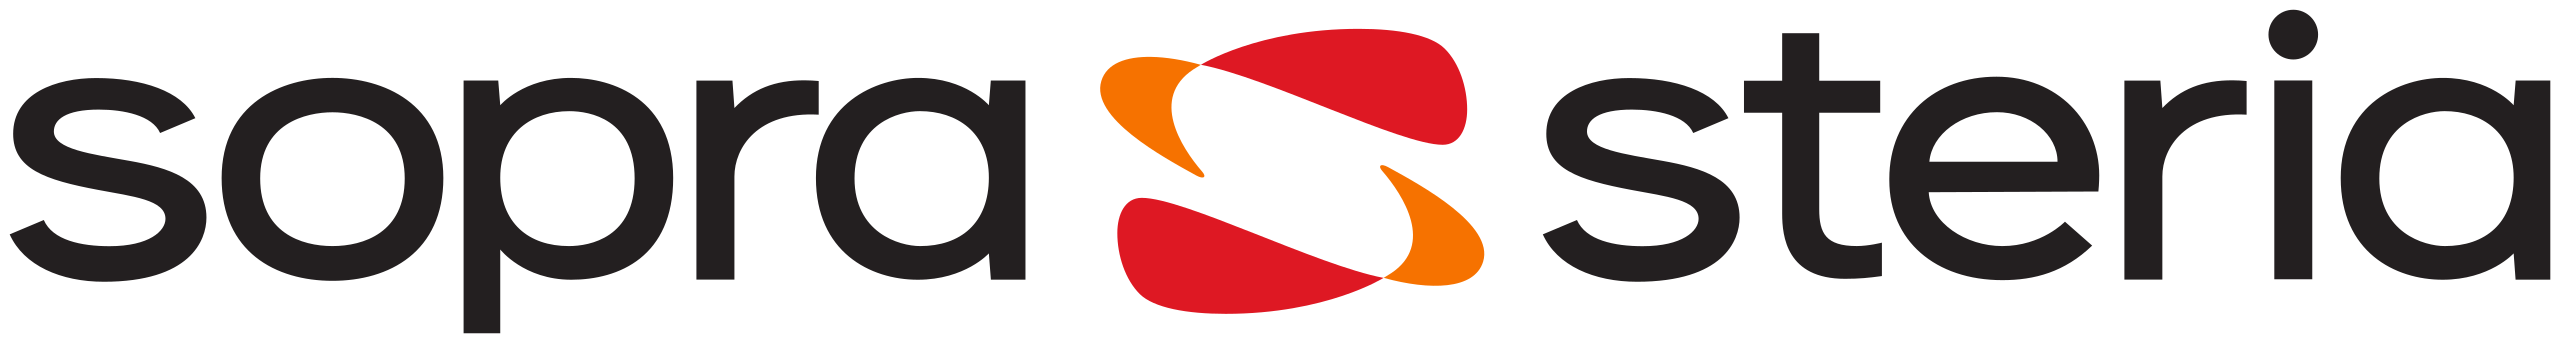 Sopra steria logo